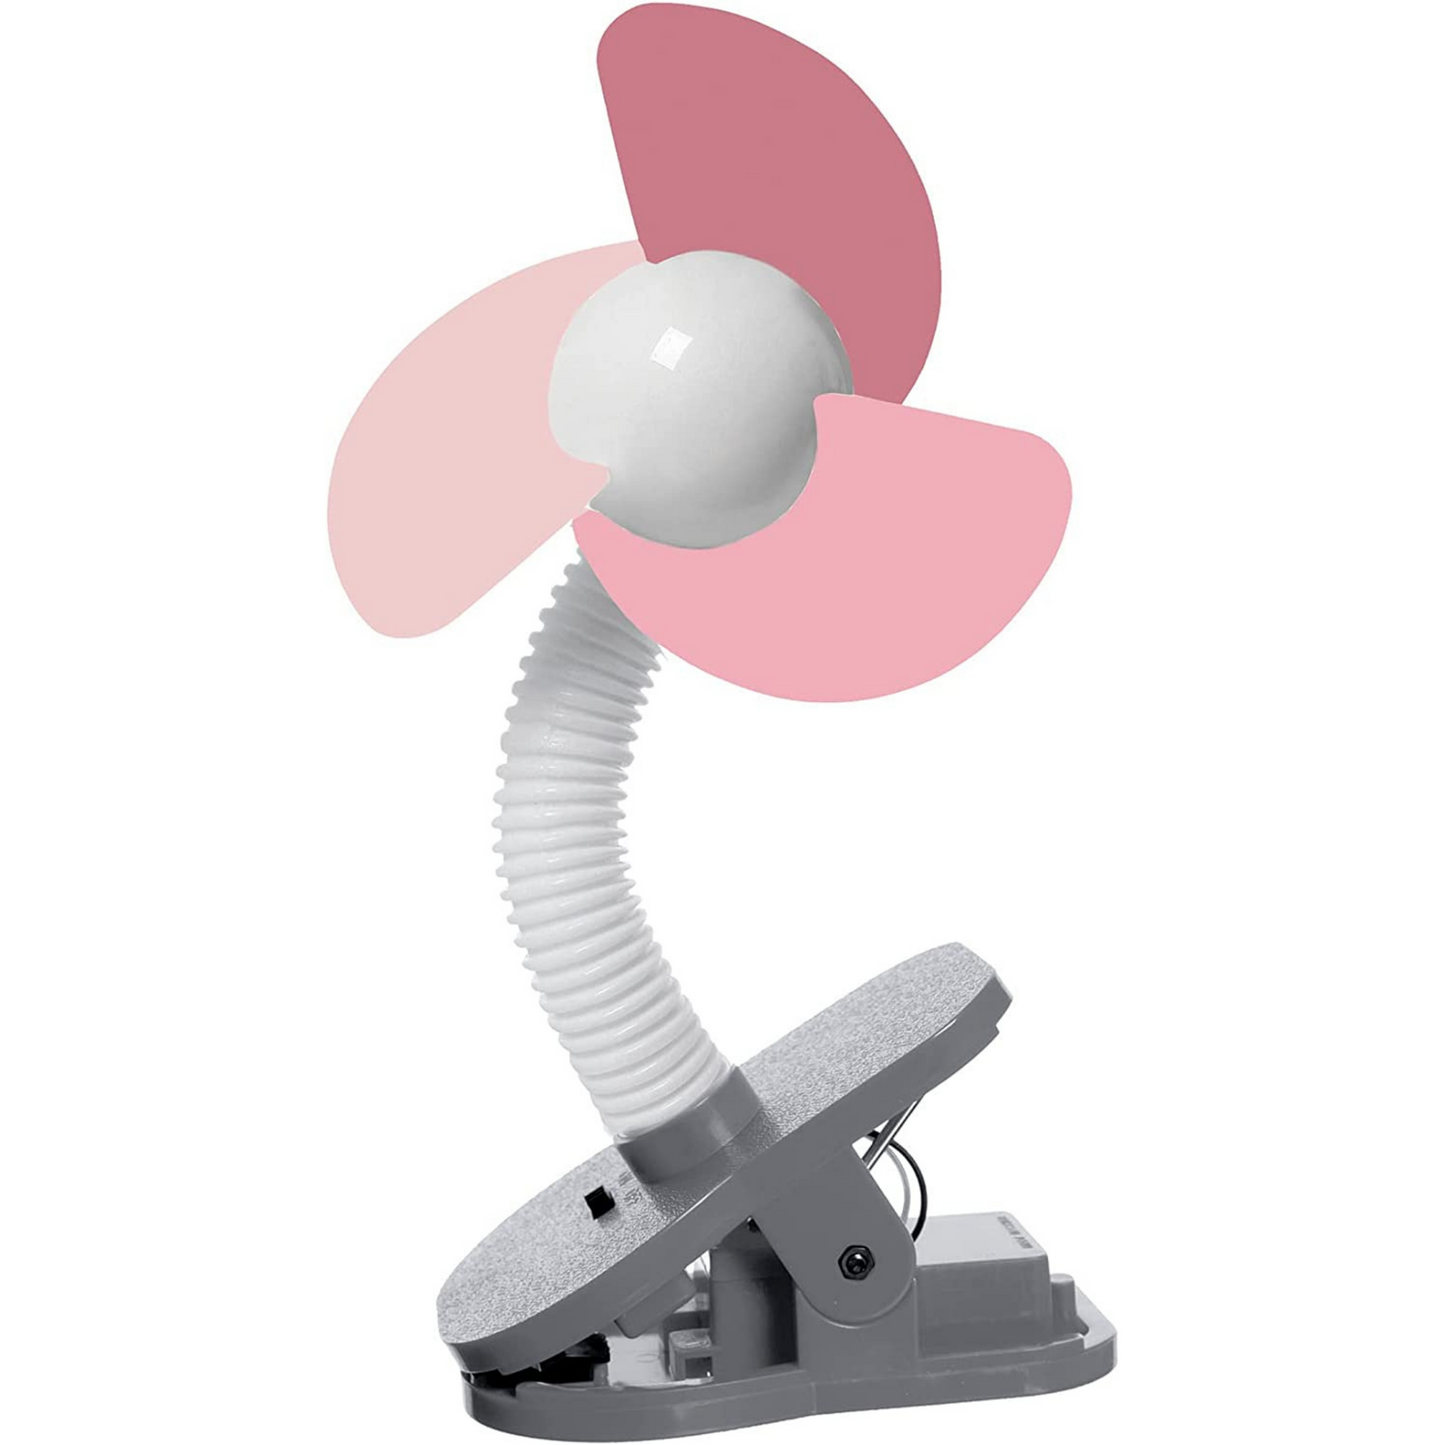 Dreambaby EZY-Fit Clip On Fan